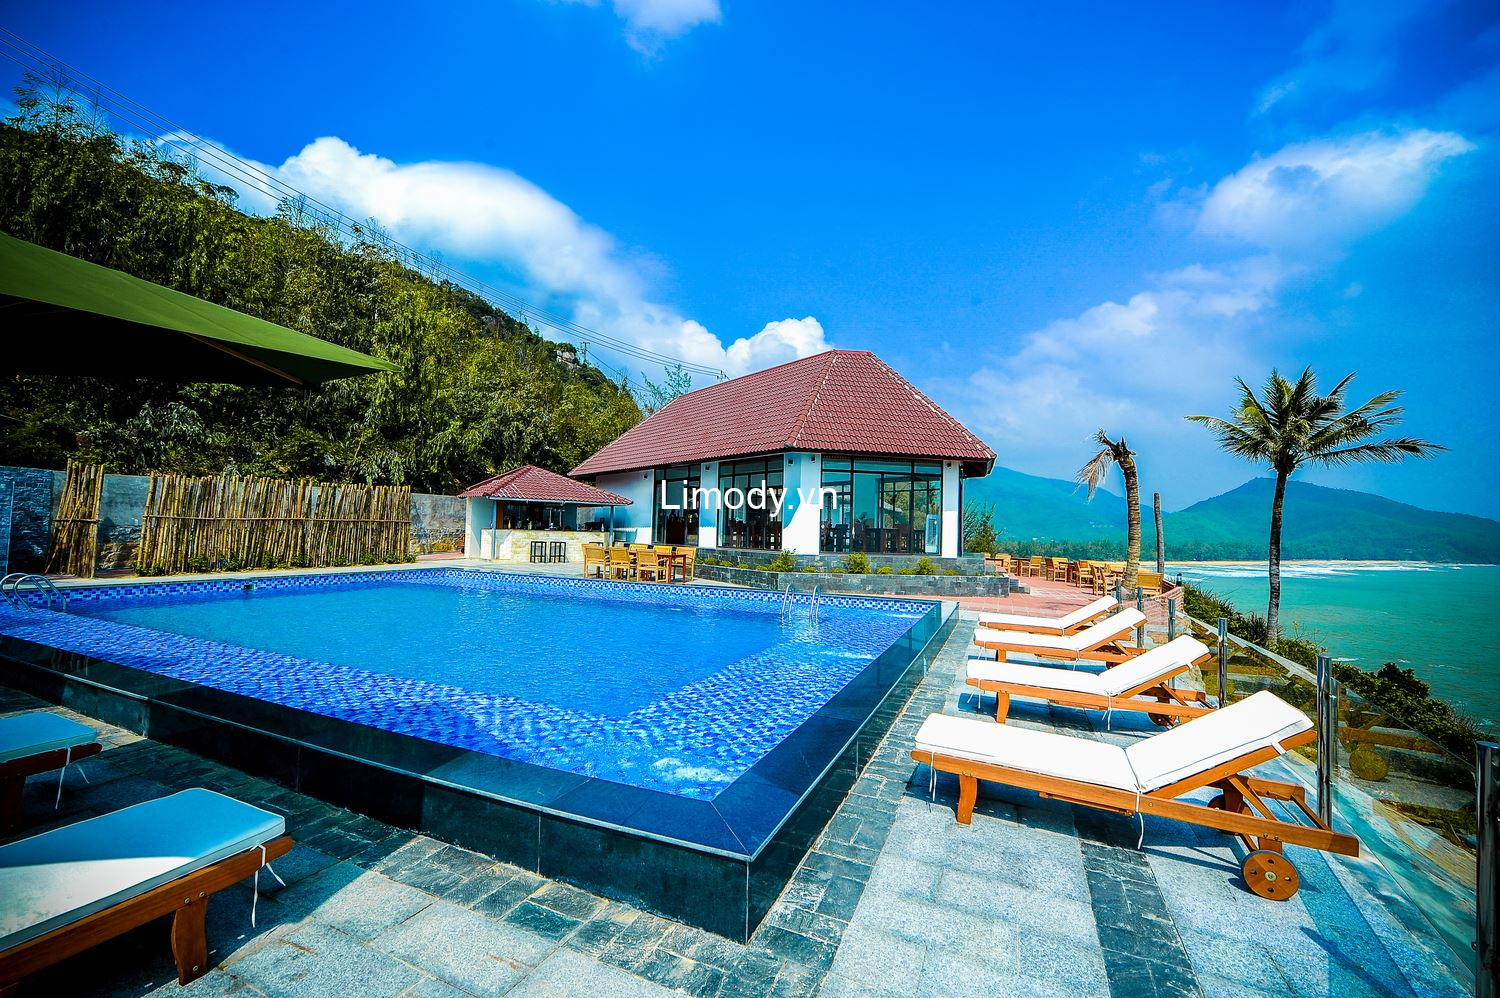 Top 10 Biệt thự villa Quy Nhơn Bình Định giá rẻ đẹp view biển nguyên căn